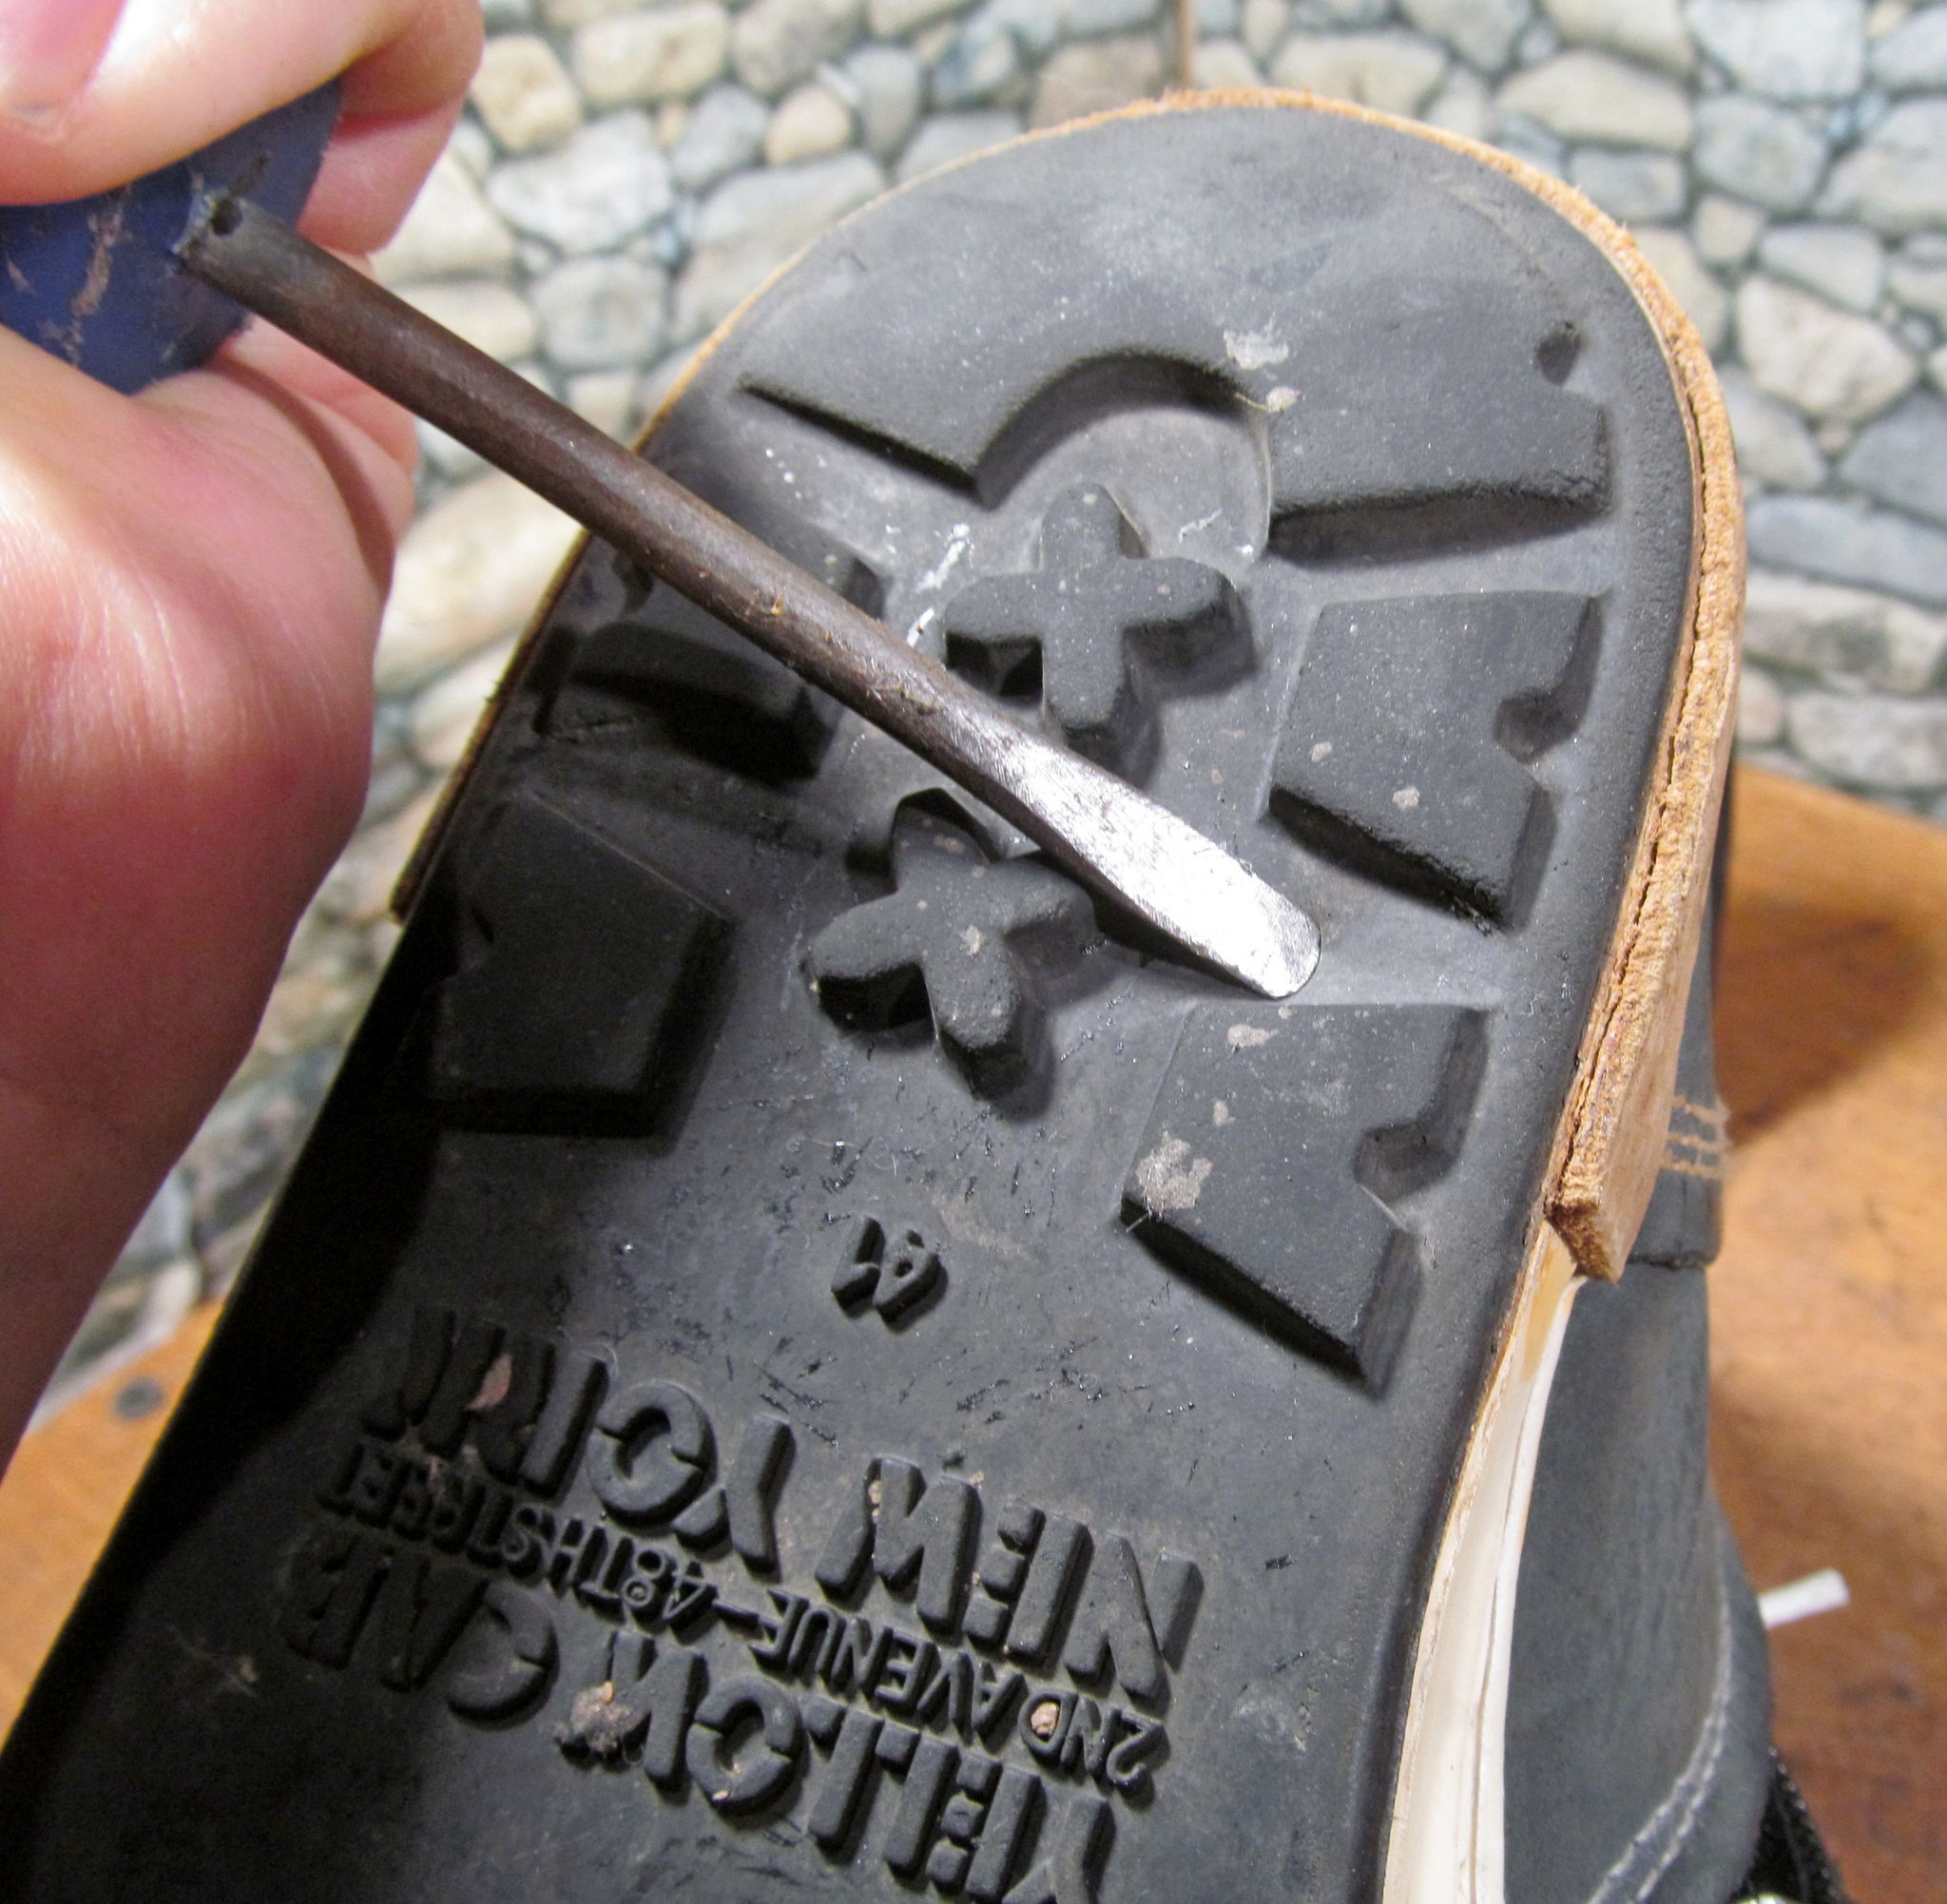 Ремонт задника кроссовок цена. Ремонт подошвы. Металлическая защита носка обуви. Ремонт задника кроссовок. Отремонтировать носок у туфель.